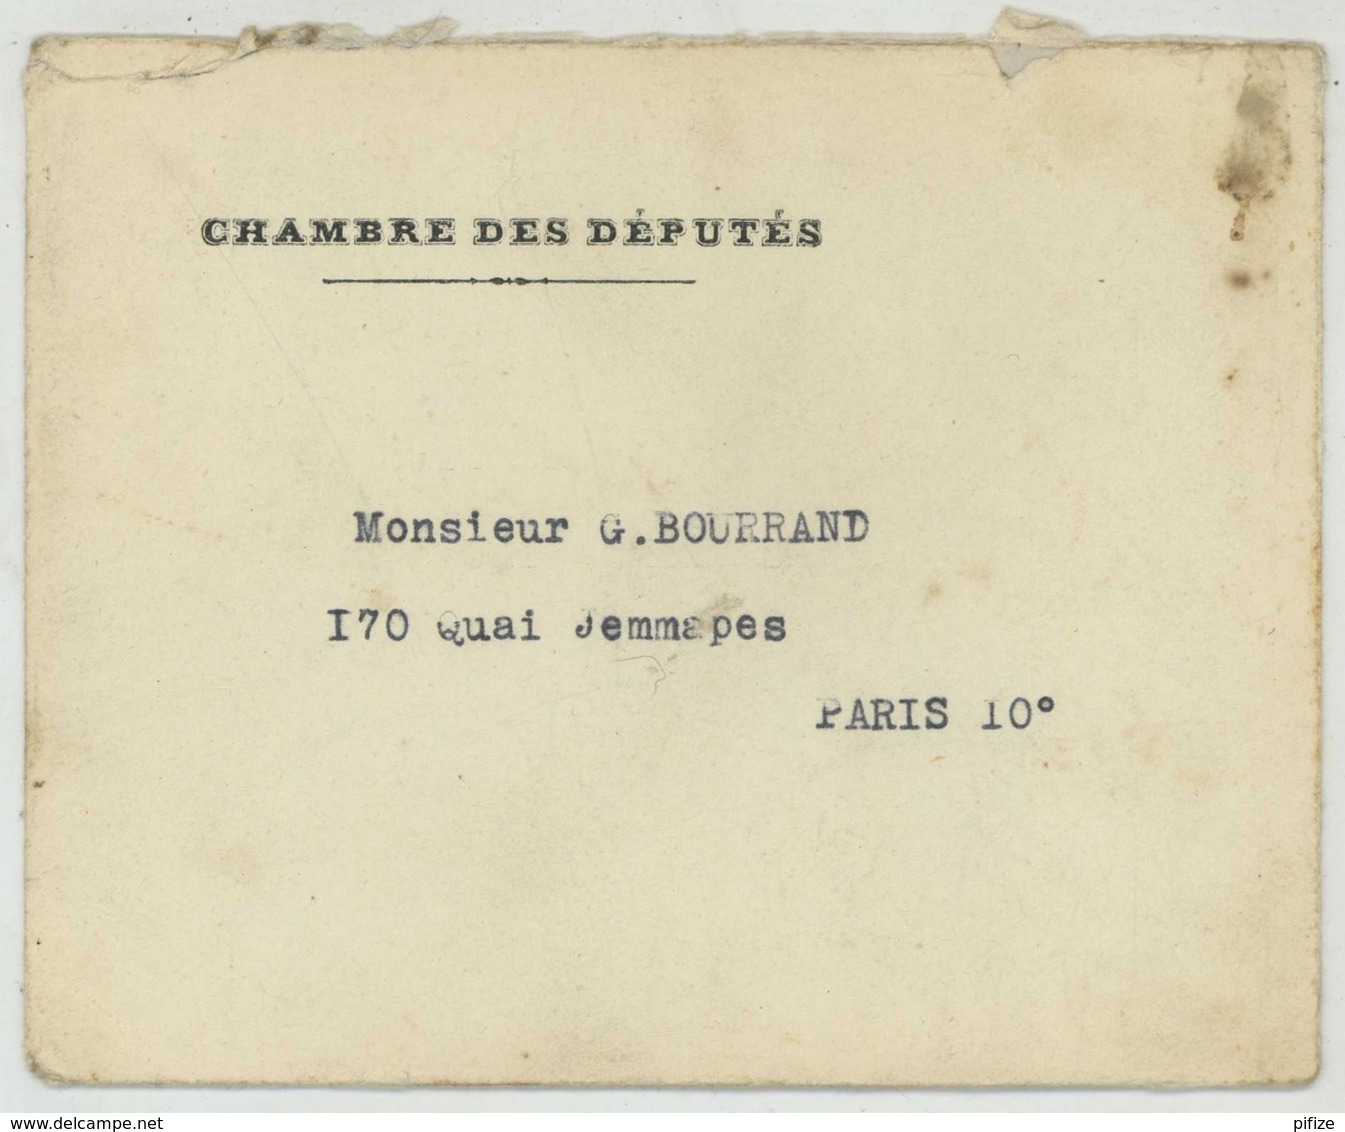 3 courriers dont 1 LAS du député Raymond Susset + carte de son comité 1932 . Socialisme . Paris 10e .